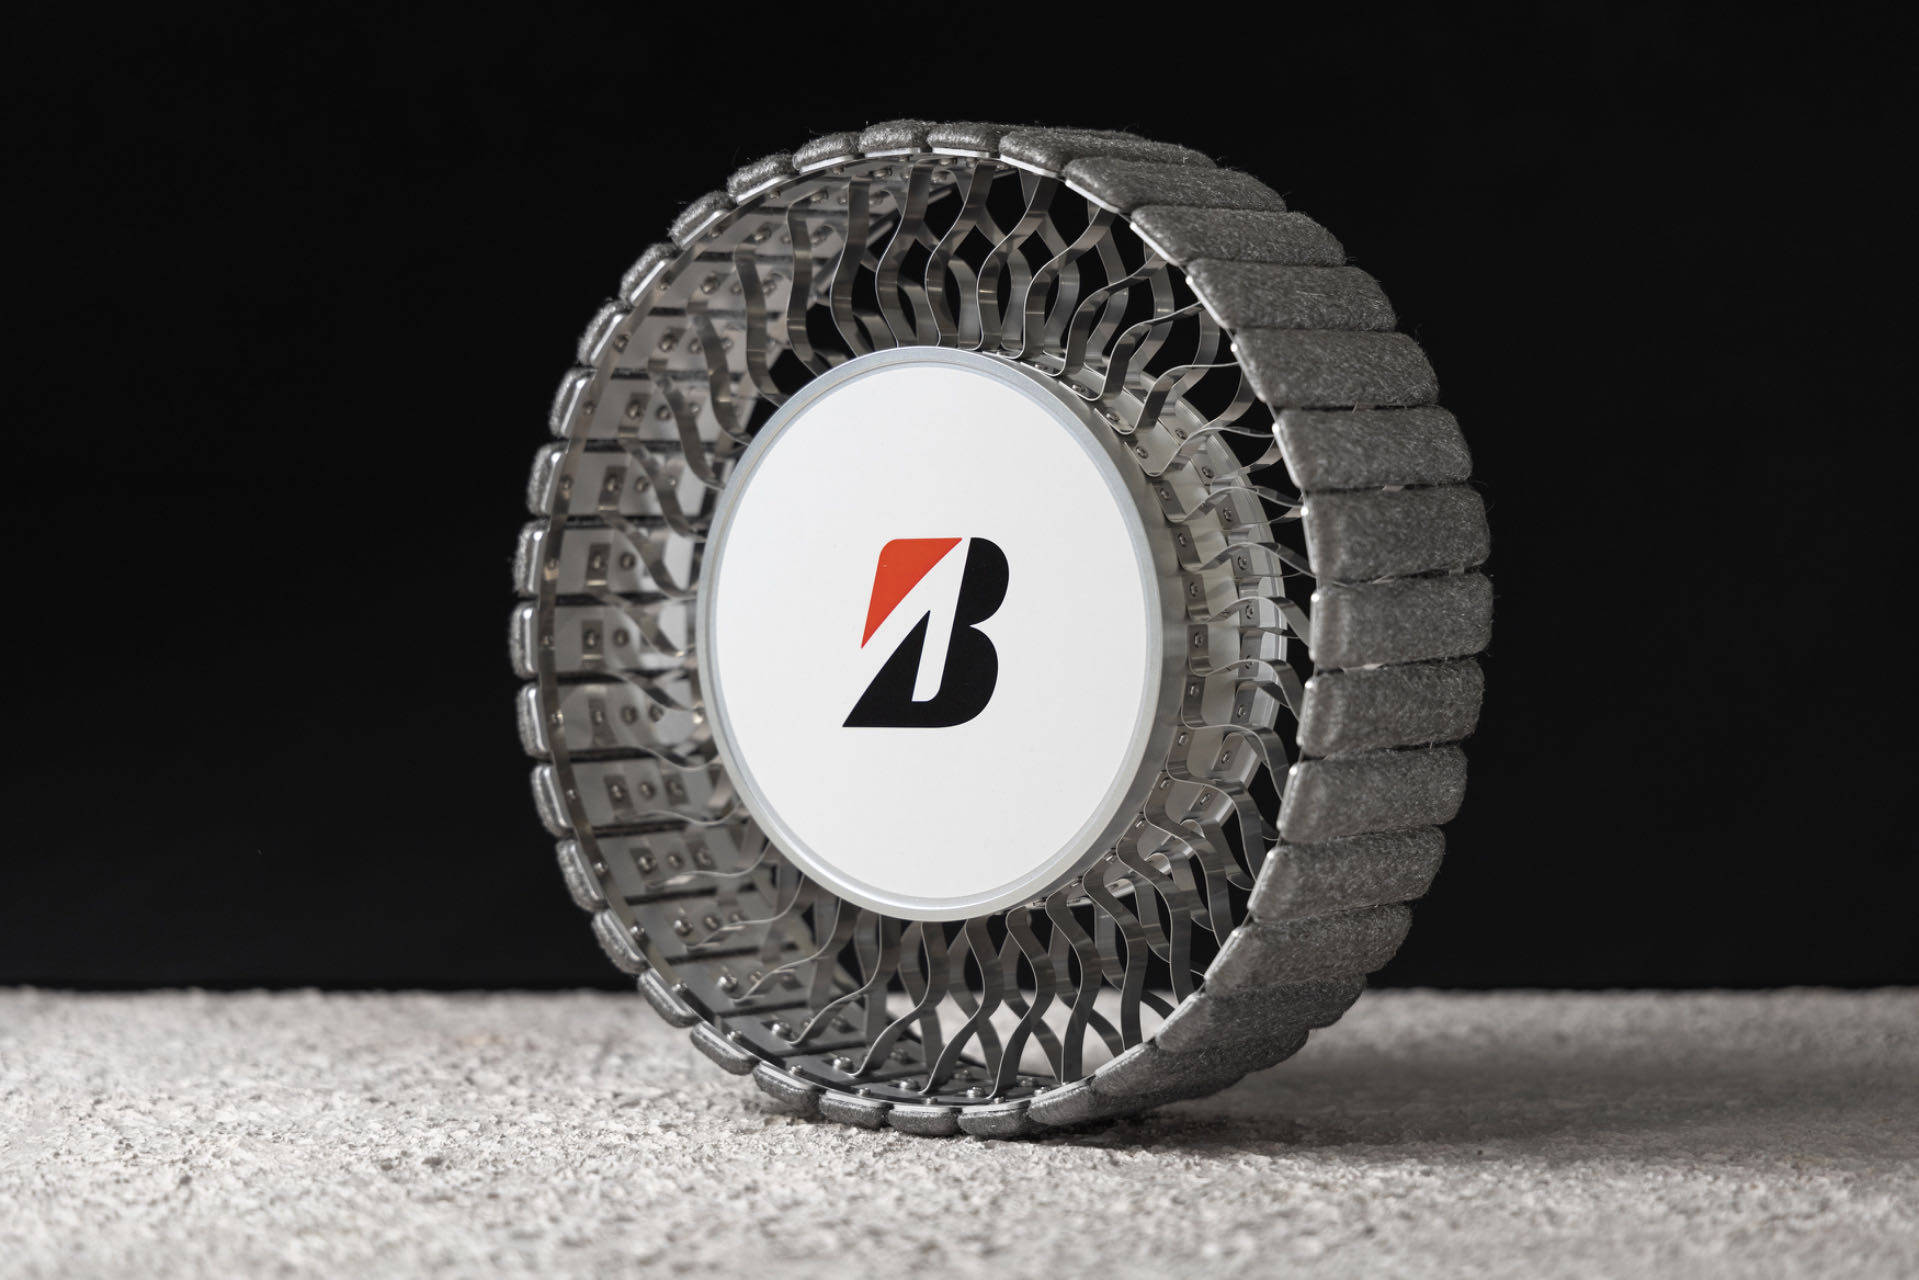 普利司通开发全新月球车轮胎,全新概念设计模型亮相第39届航天研讨会